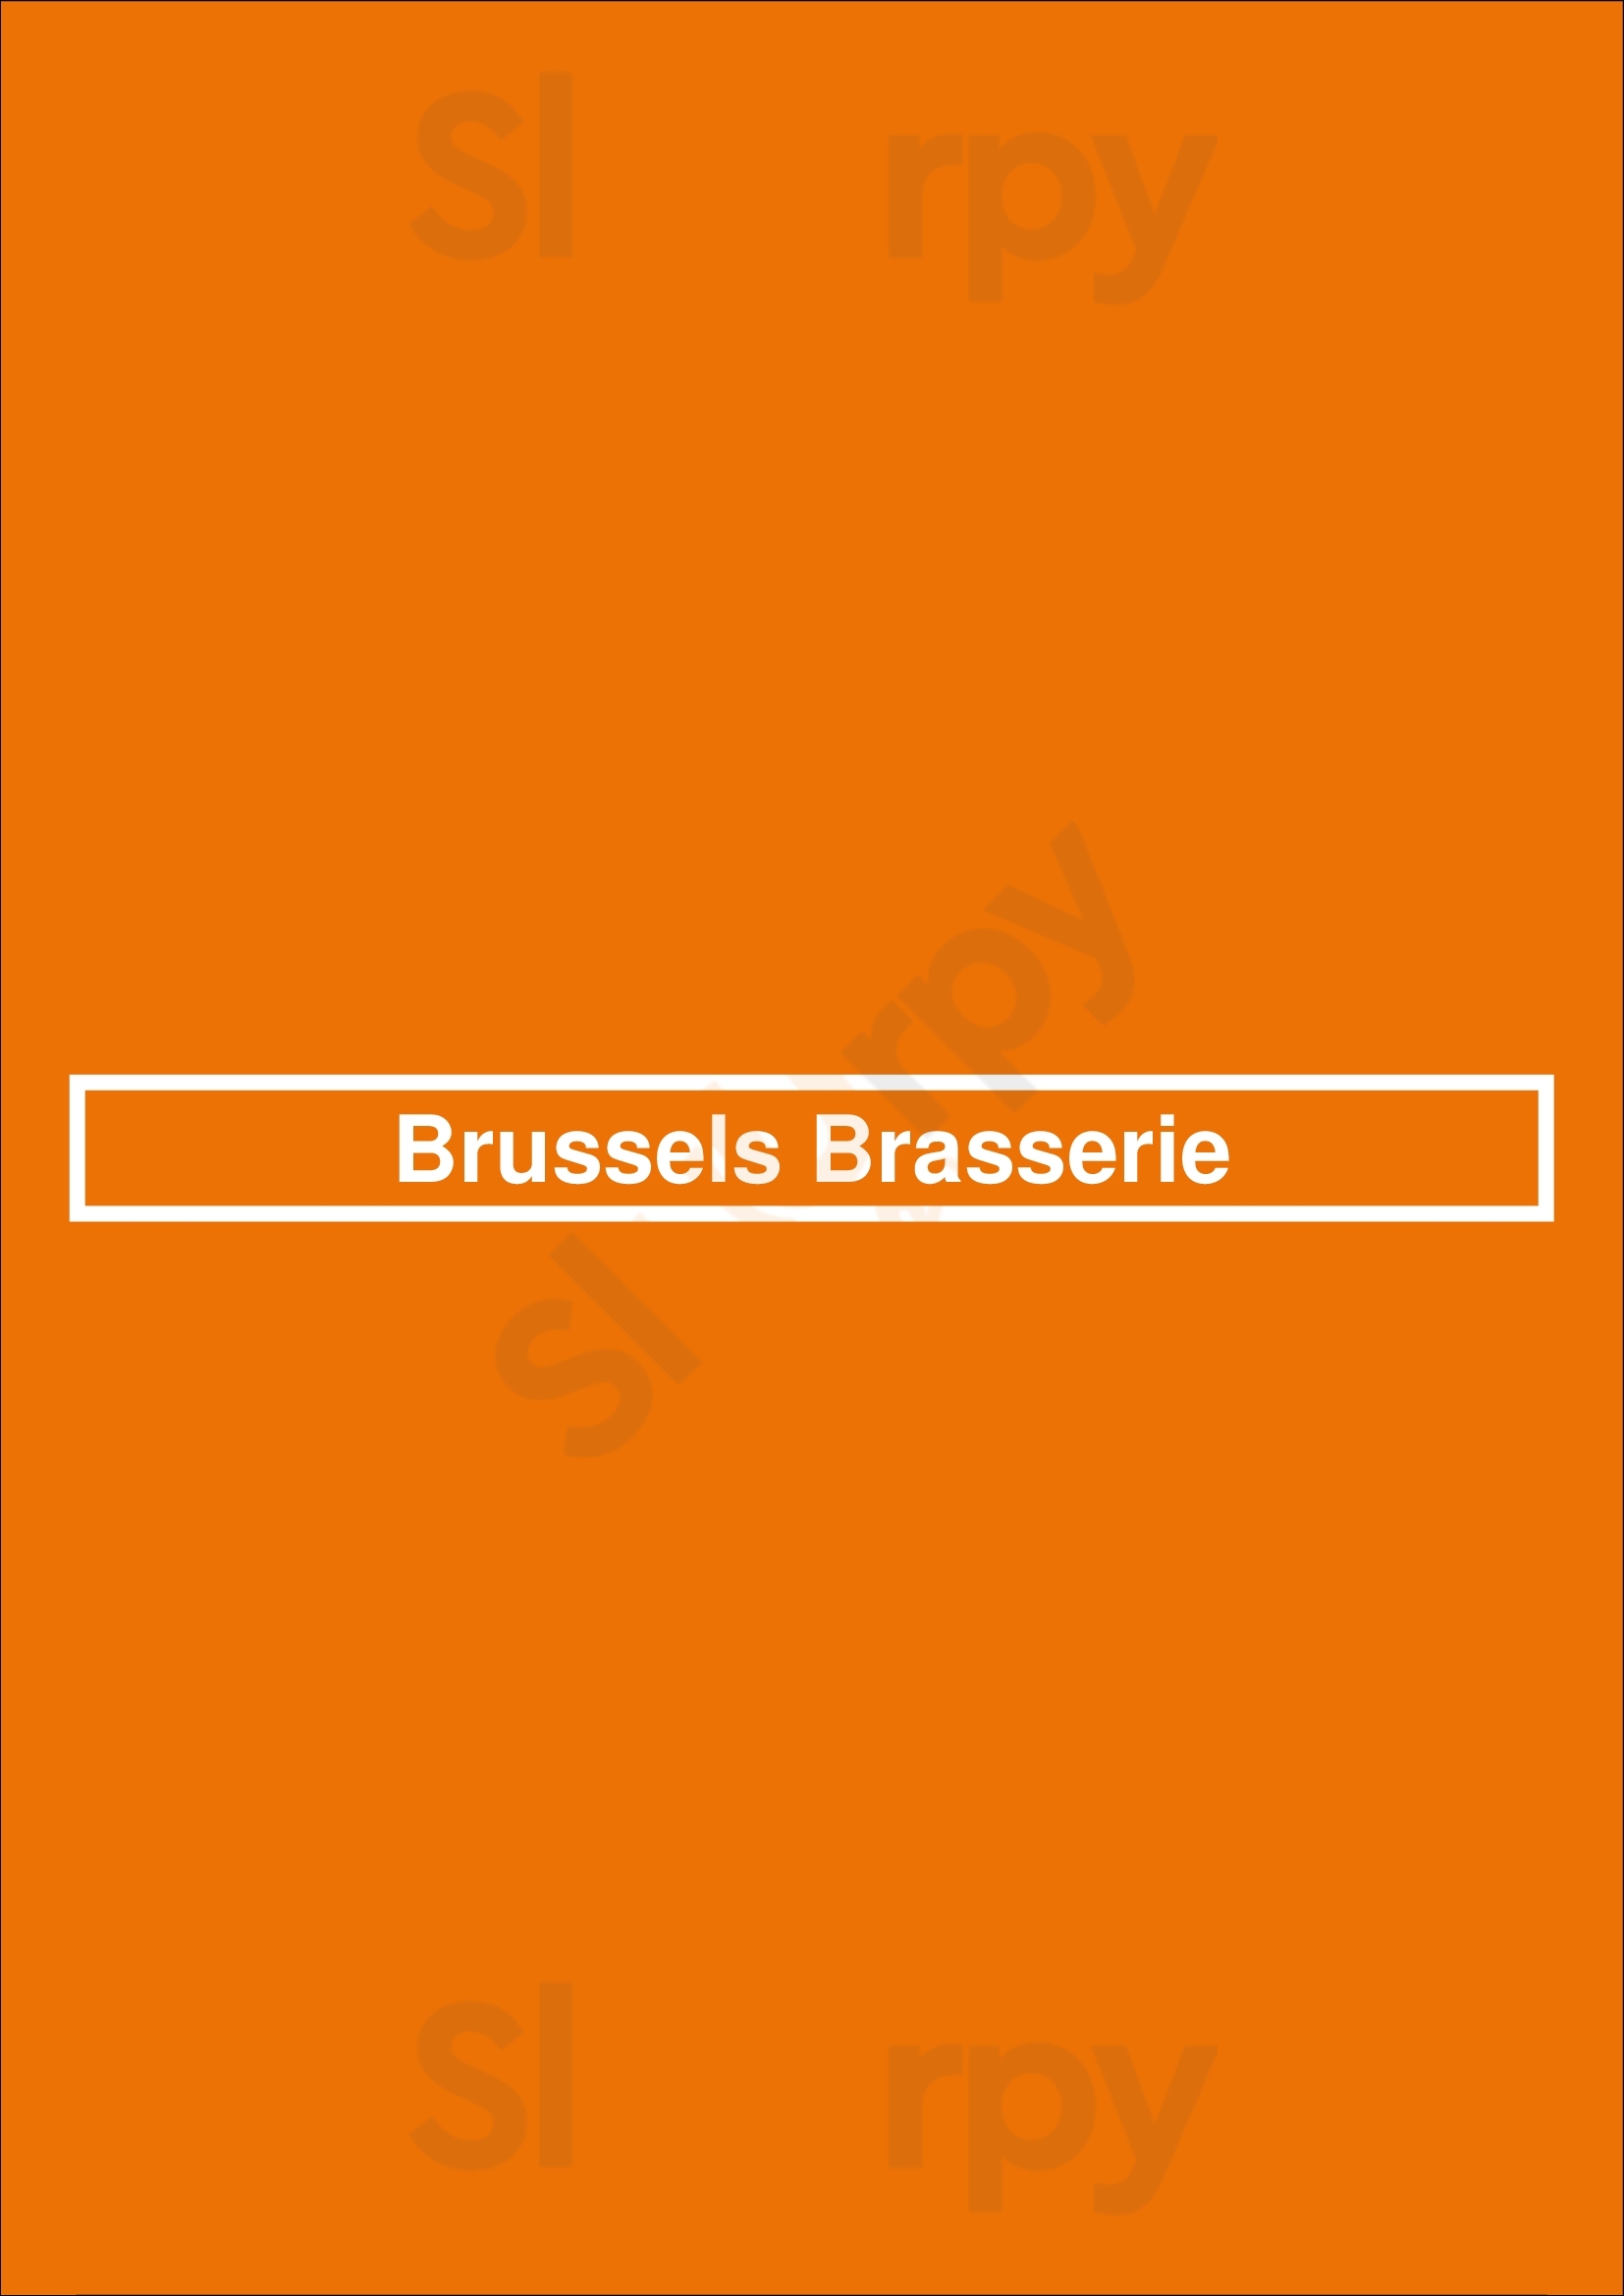 Brussels Brasserie Bruxelles Menu - 1